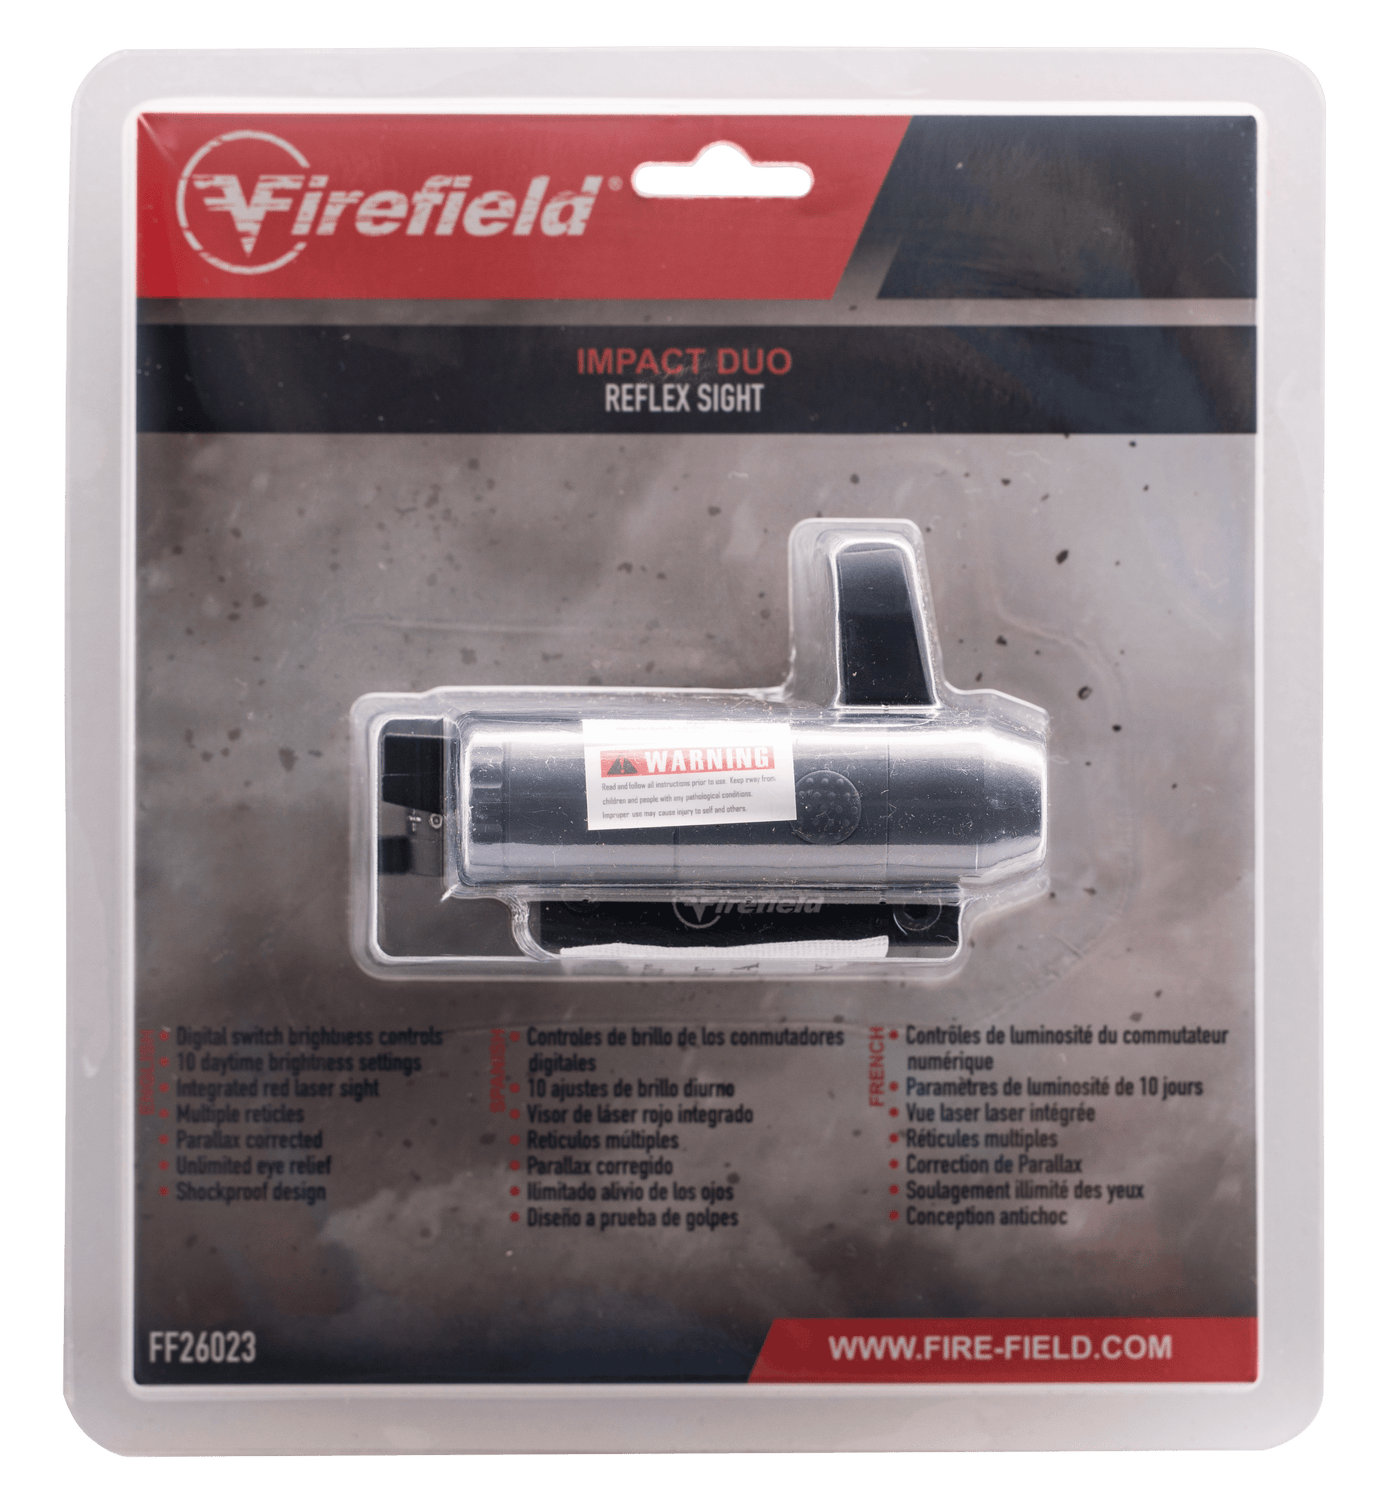 Firefield Firefield Impact, Firefield Ff26023   Impact Duo Reflex Sight Optics